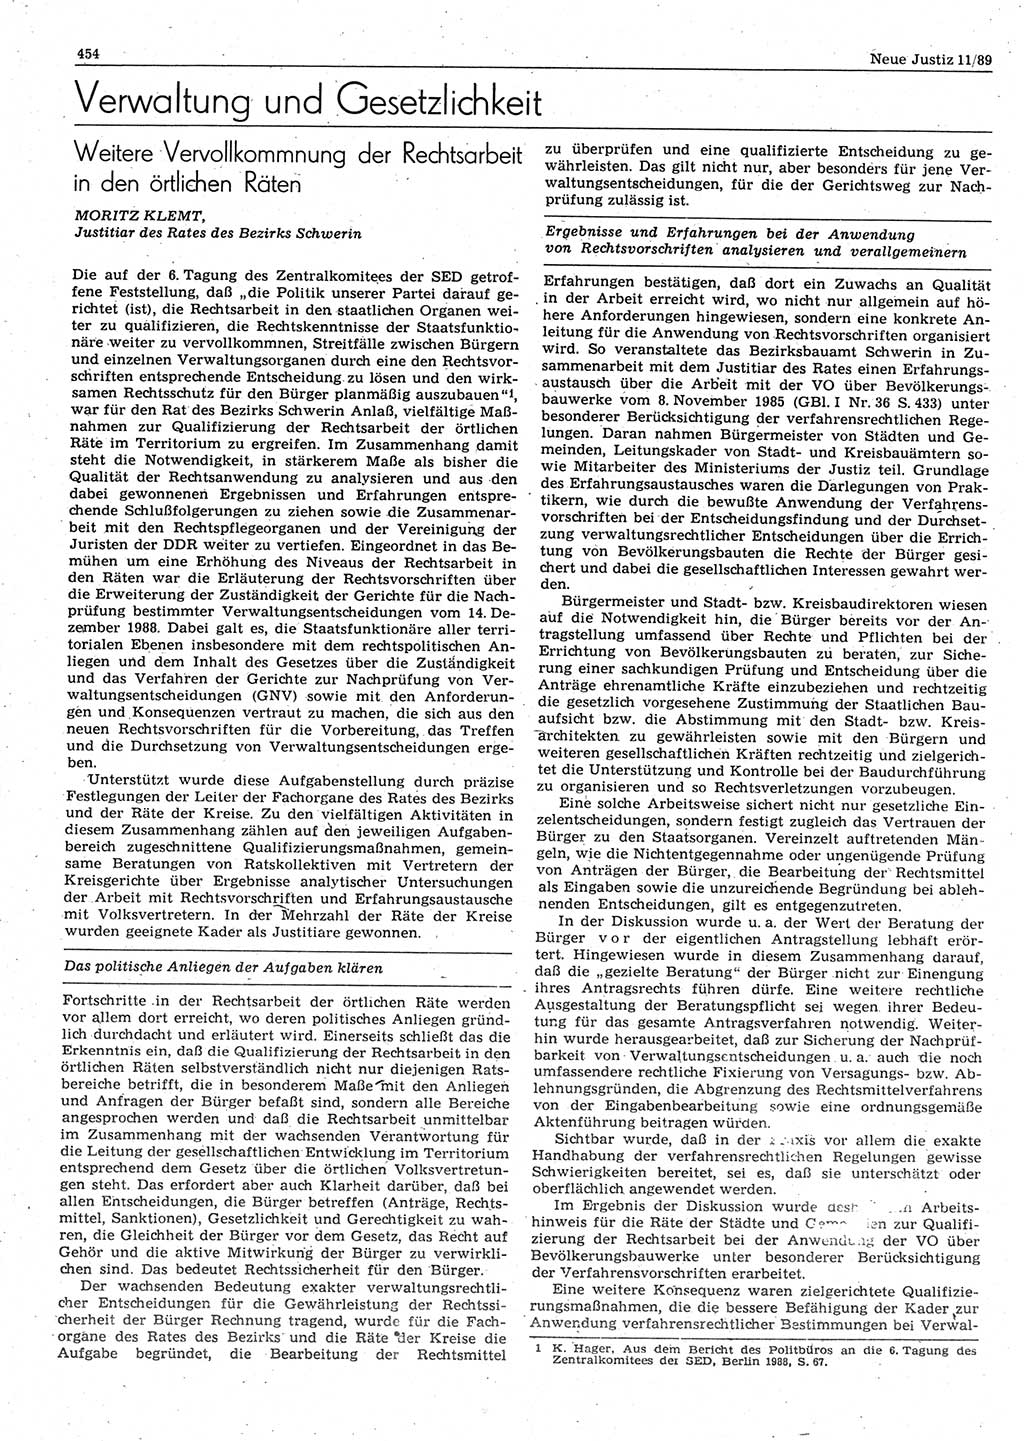 Neue Justiz (NJ), Zeitschrift für sozialistisches Recht und Gesetzlichkeit [Deutsche Demokratische Republik (DDR)], 43. Jahrgang 1989, Seite 454 (NJ DDR 1989, S. 454)